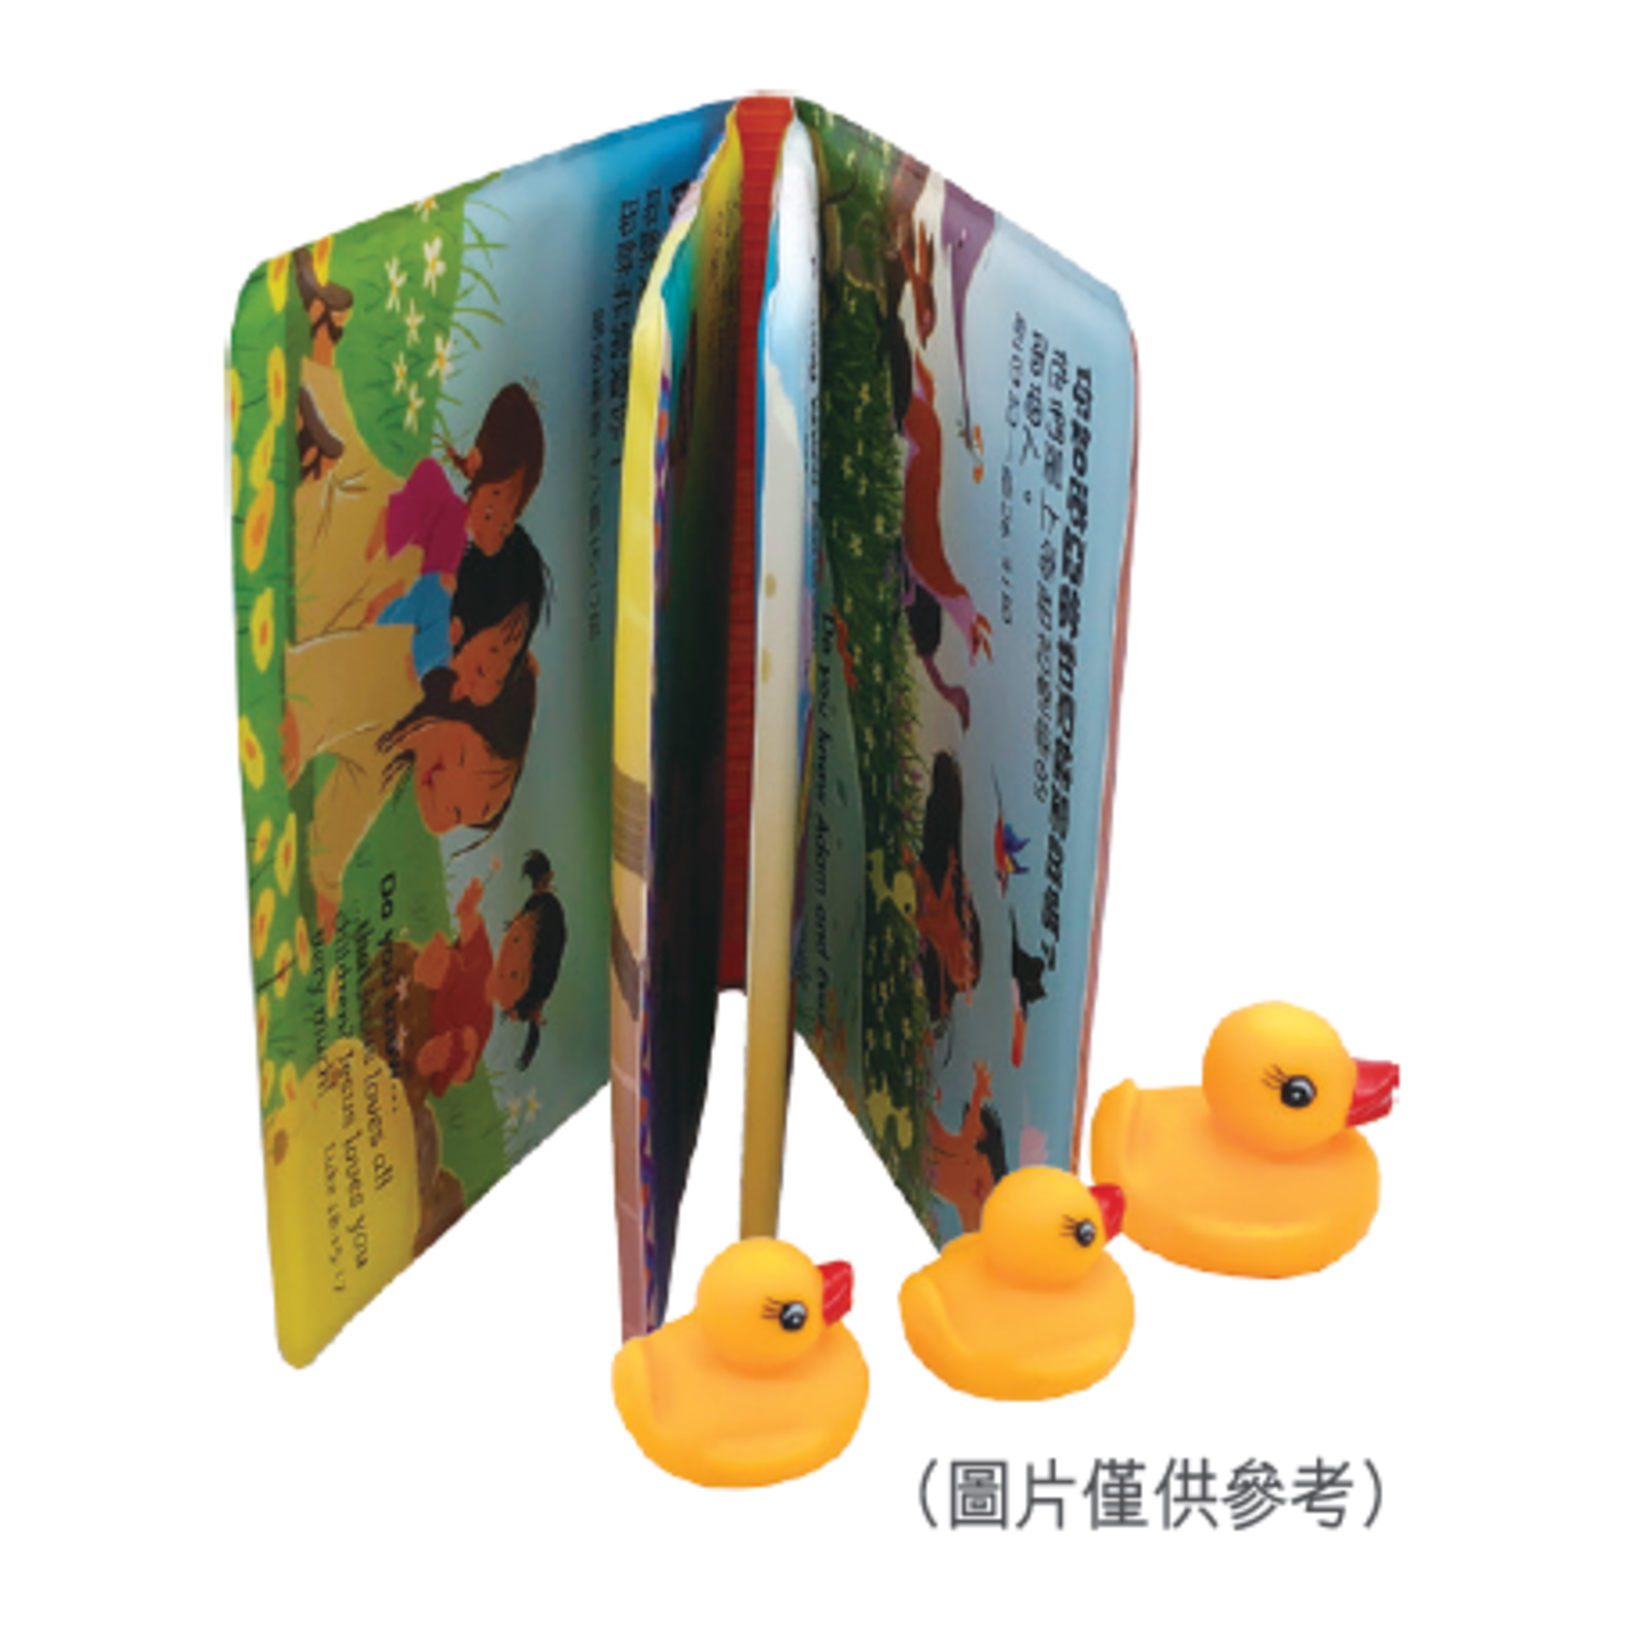 漢語聖經協會 Chinese Bible International 他們是誰？寶寶不離手聖經故事（中英對照） My Bath Bible, Traditional Chinese/English, Foam-padded Bathbook